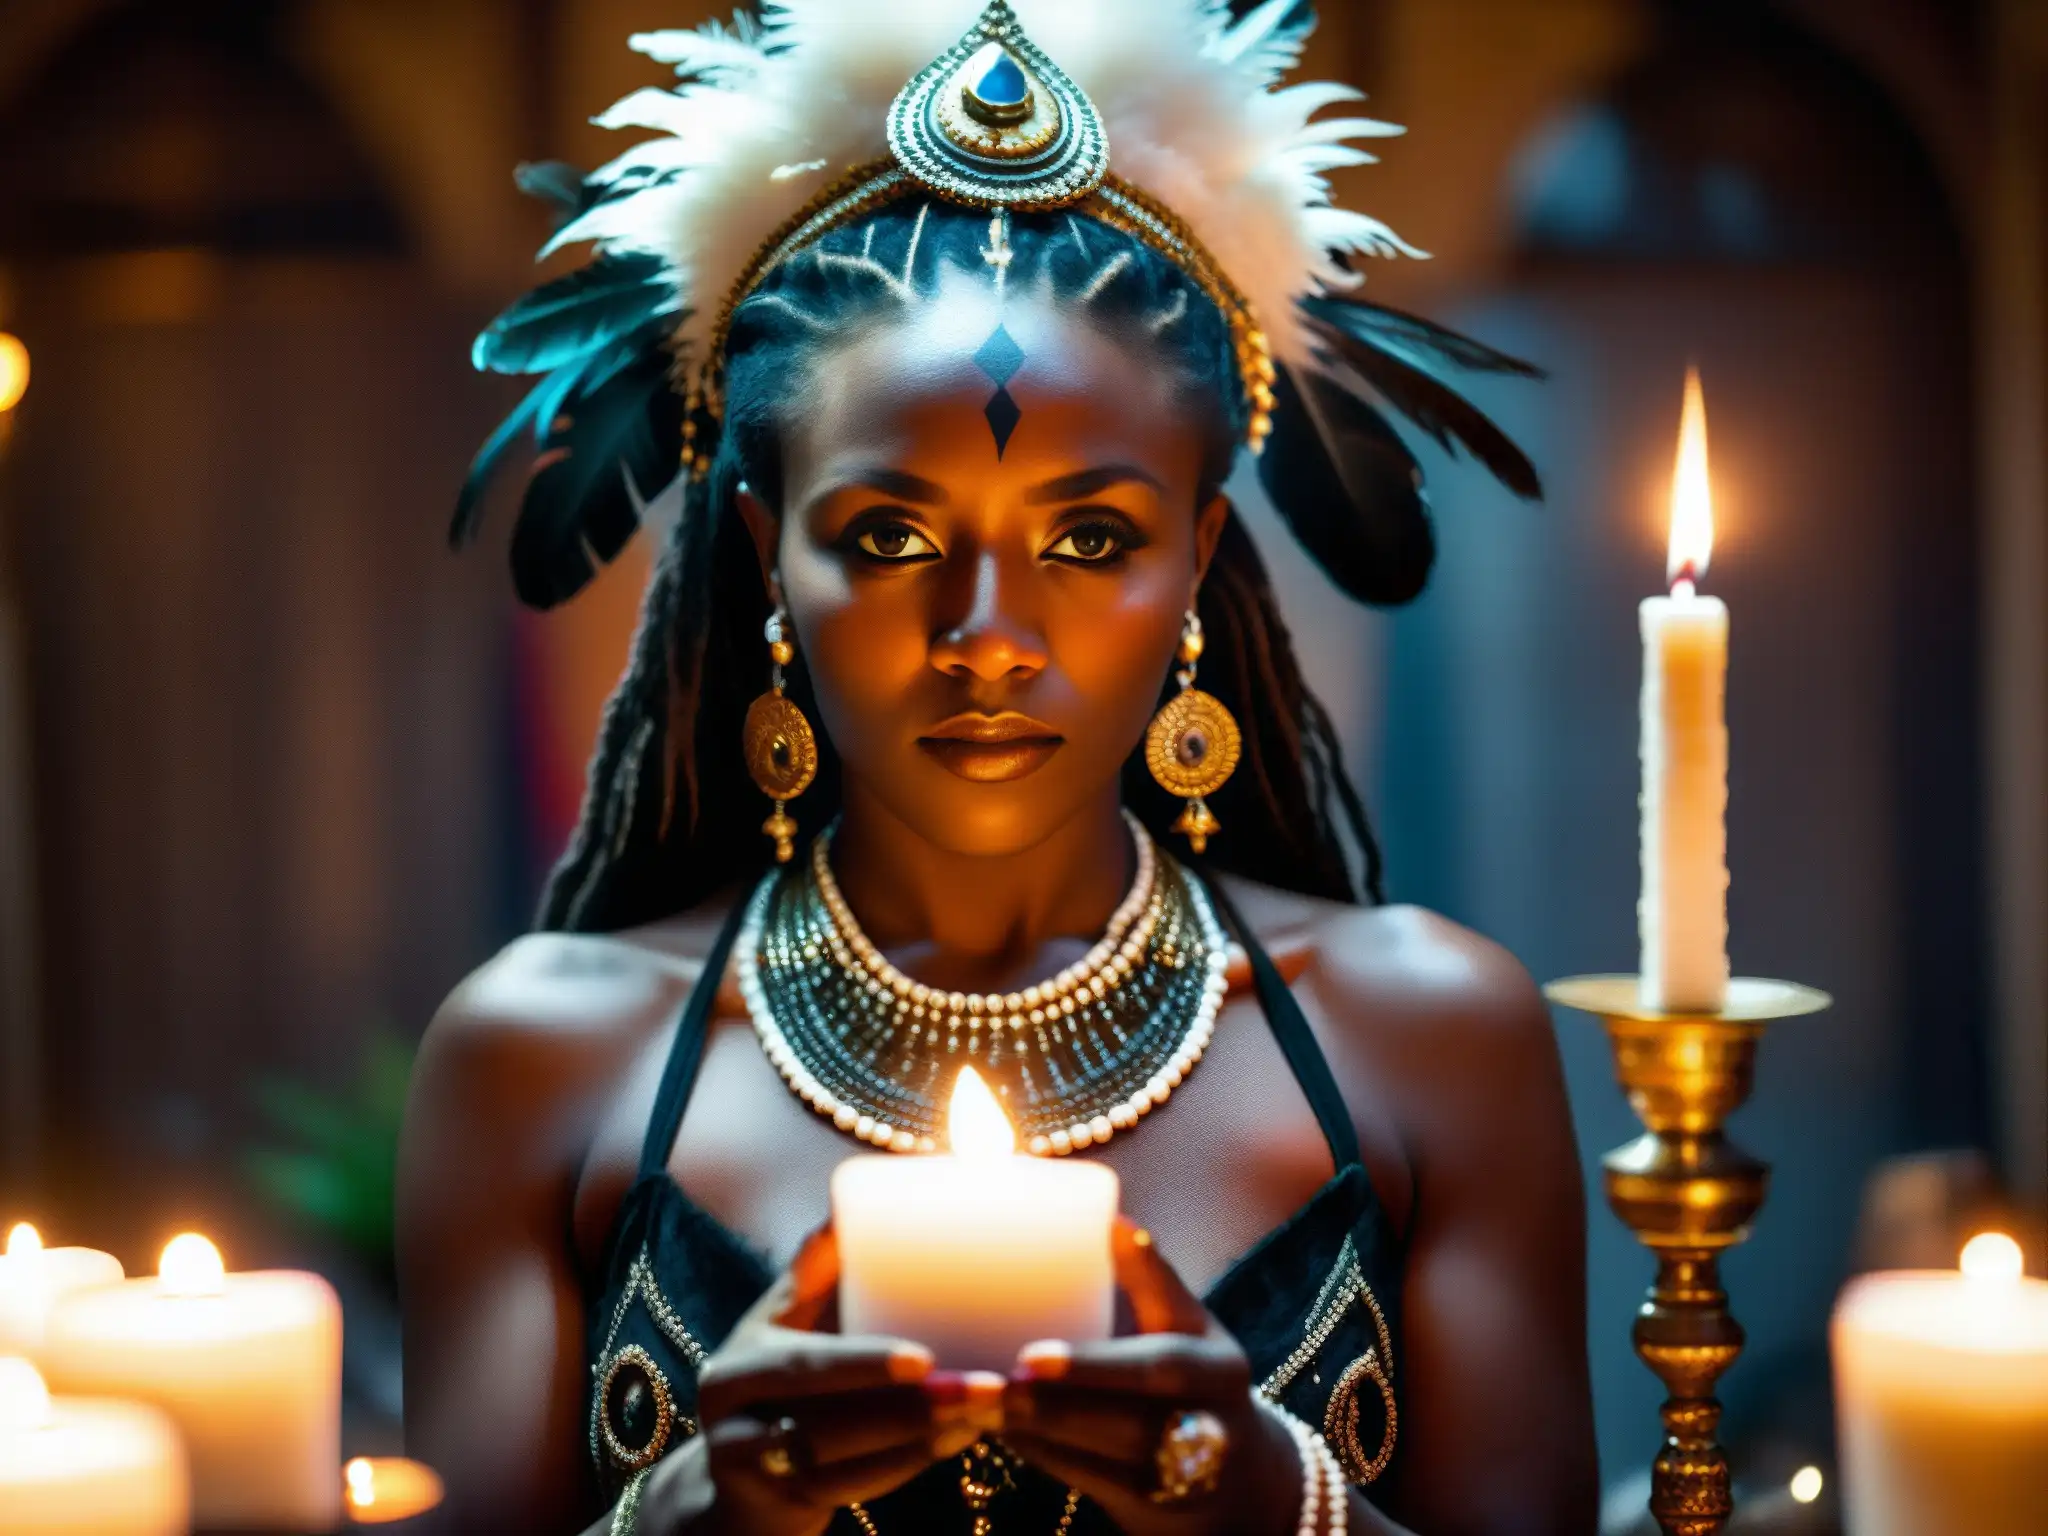 Una sacerdotisa vudú en Nueva Orleans realiza un ritual, rodeada de velas y talismanes